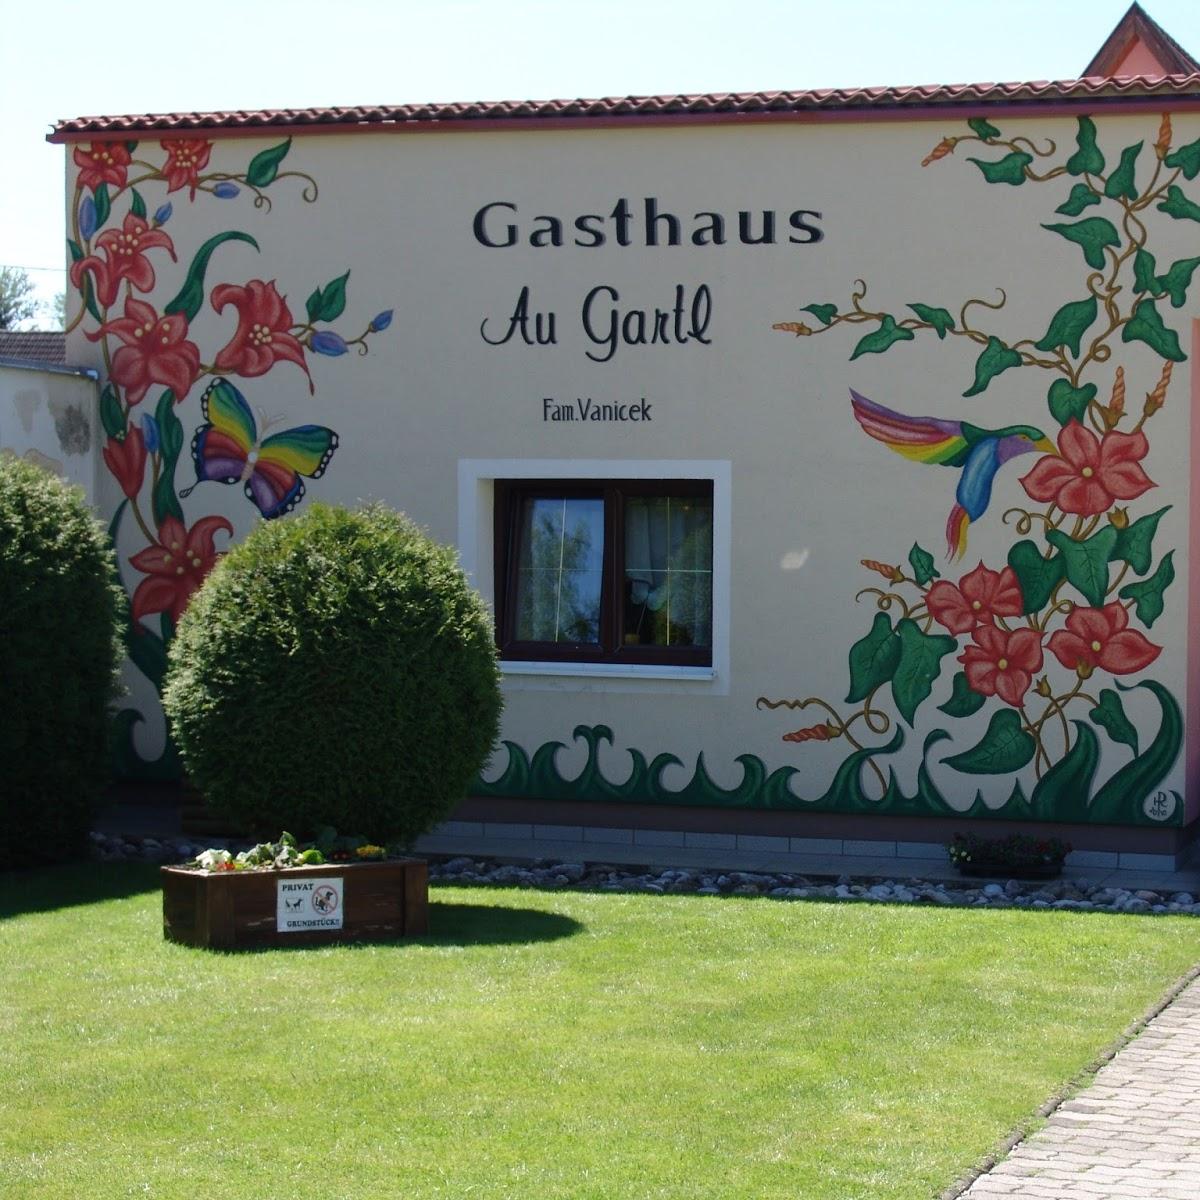 Restaurant "Gasthaus Augartl" in Neunkirchen